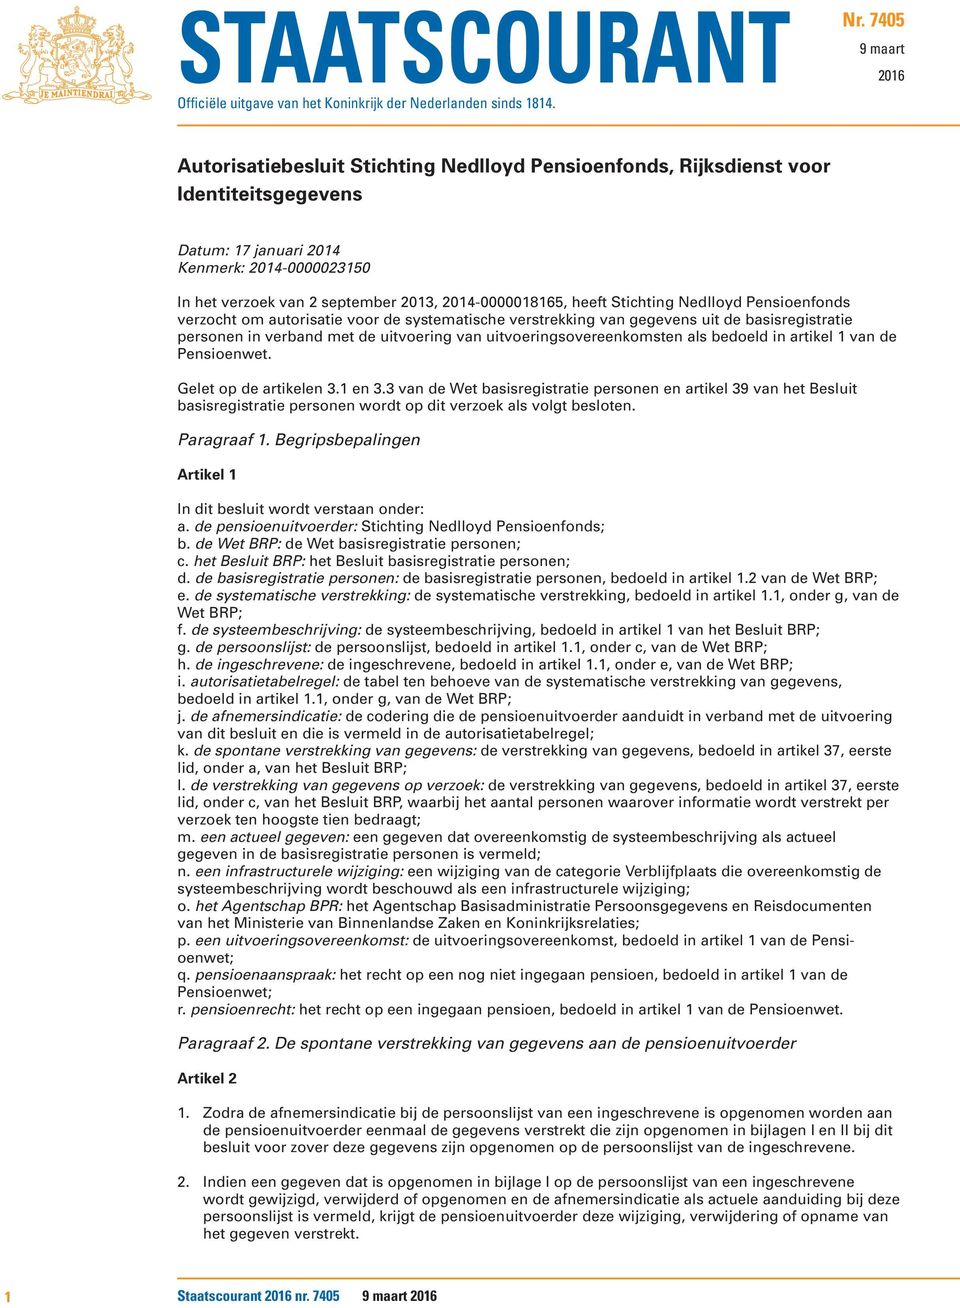 2014-0000018165, heeft Stichting Nedlloyd Pensioenfonds verzocht om autorisatie voor de systematische verstrekking van gegevens uit de basisregistratie personen in verband met de uitvoering van